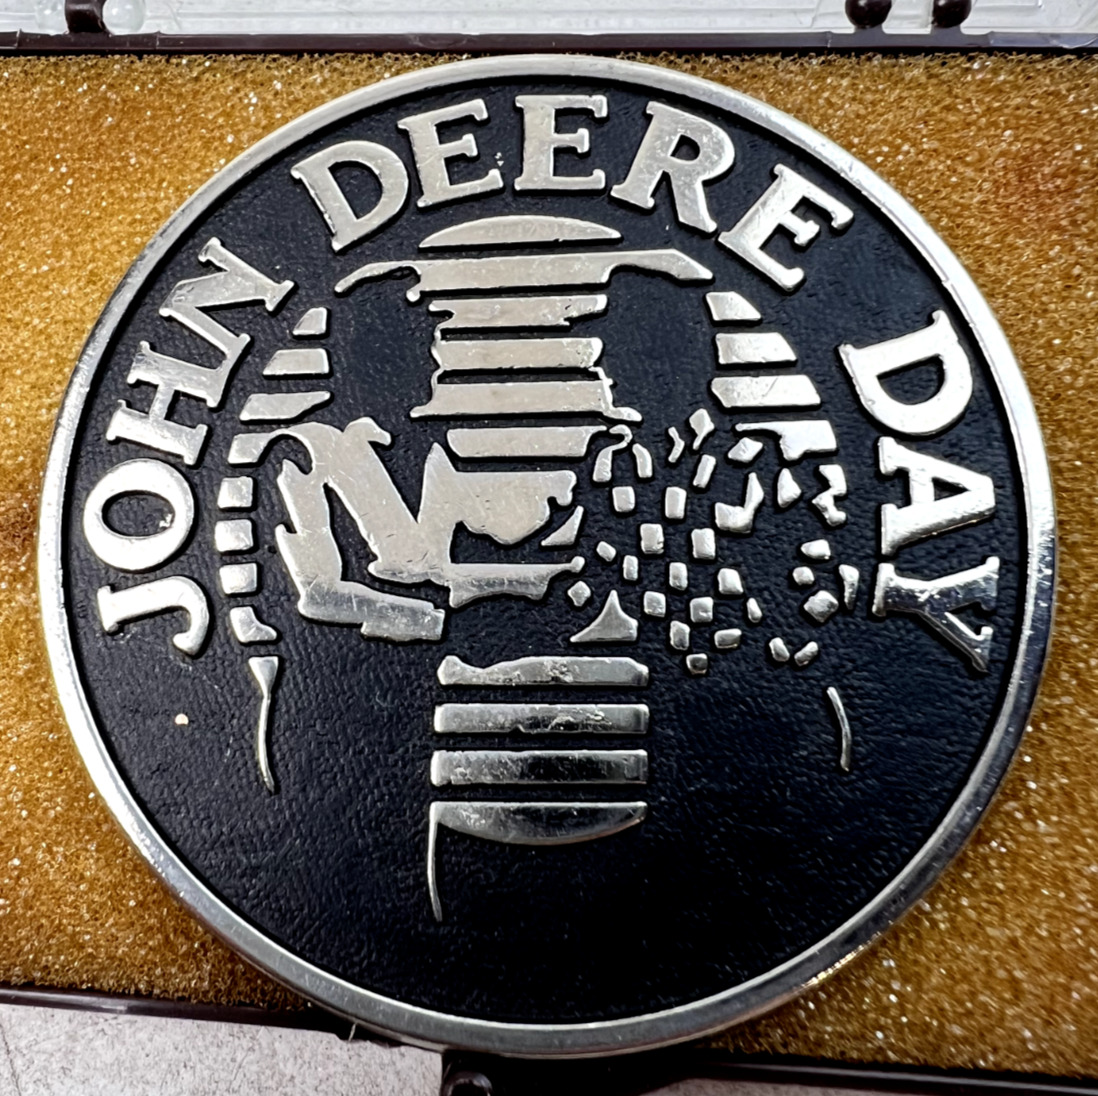 1990 John Deere Day Belt Buckle - 2.5\